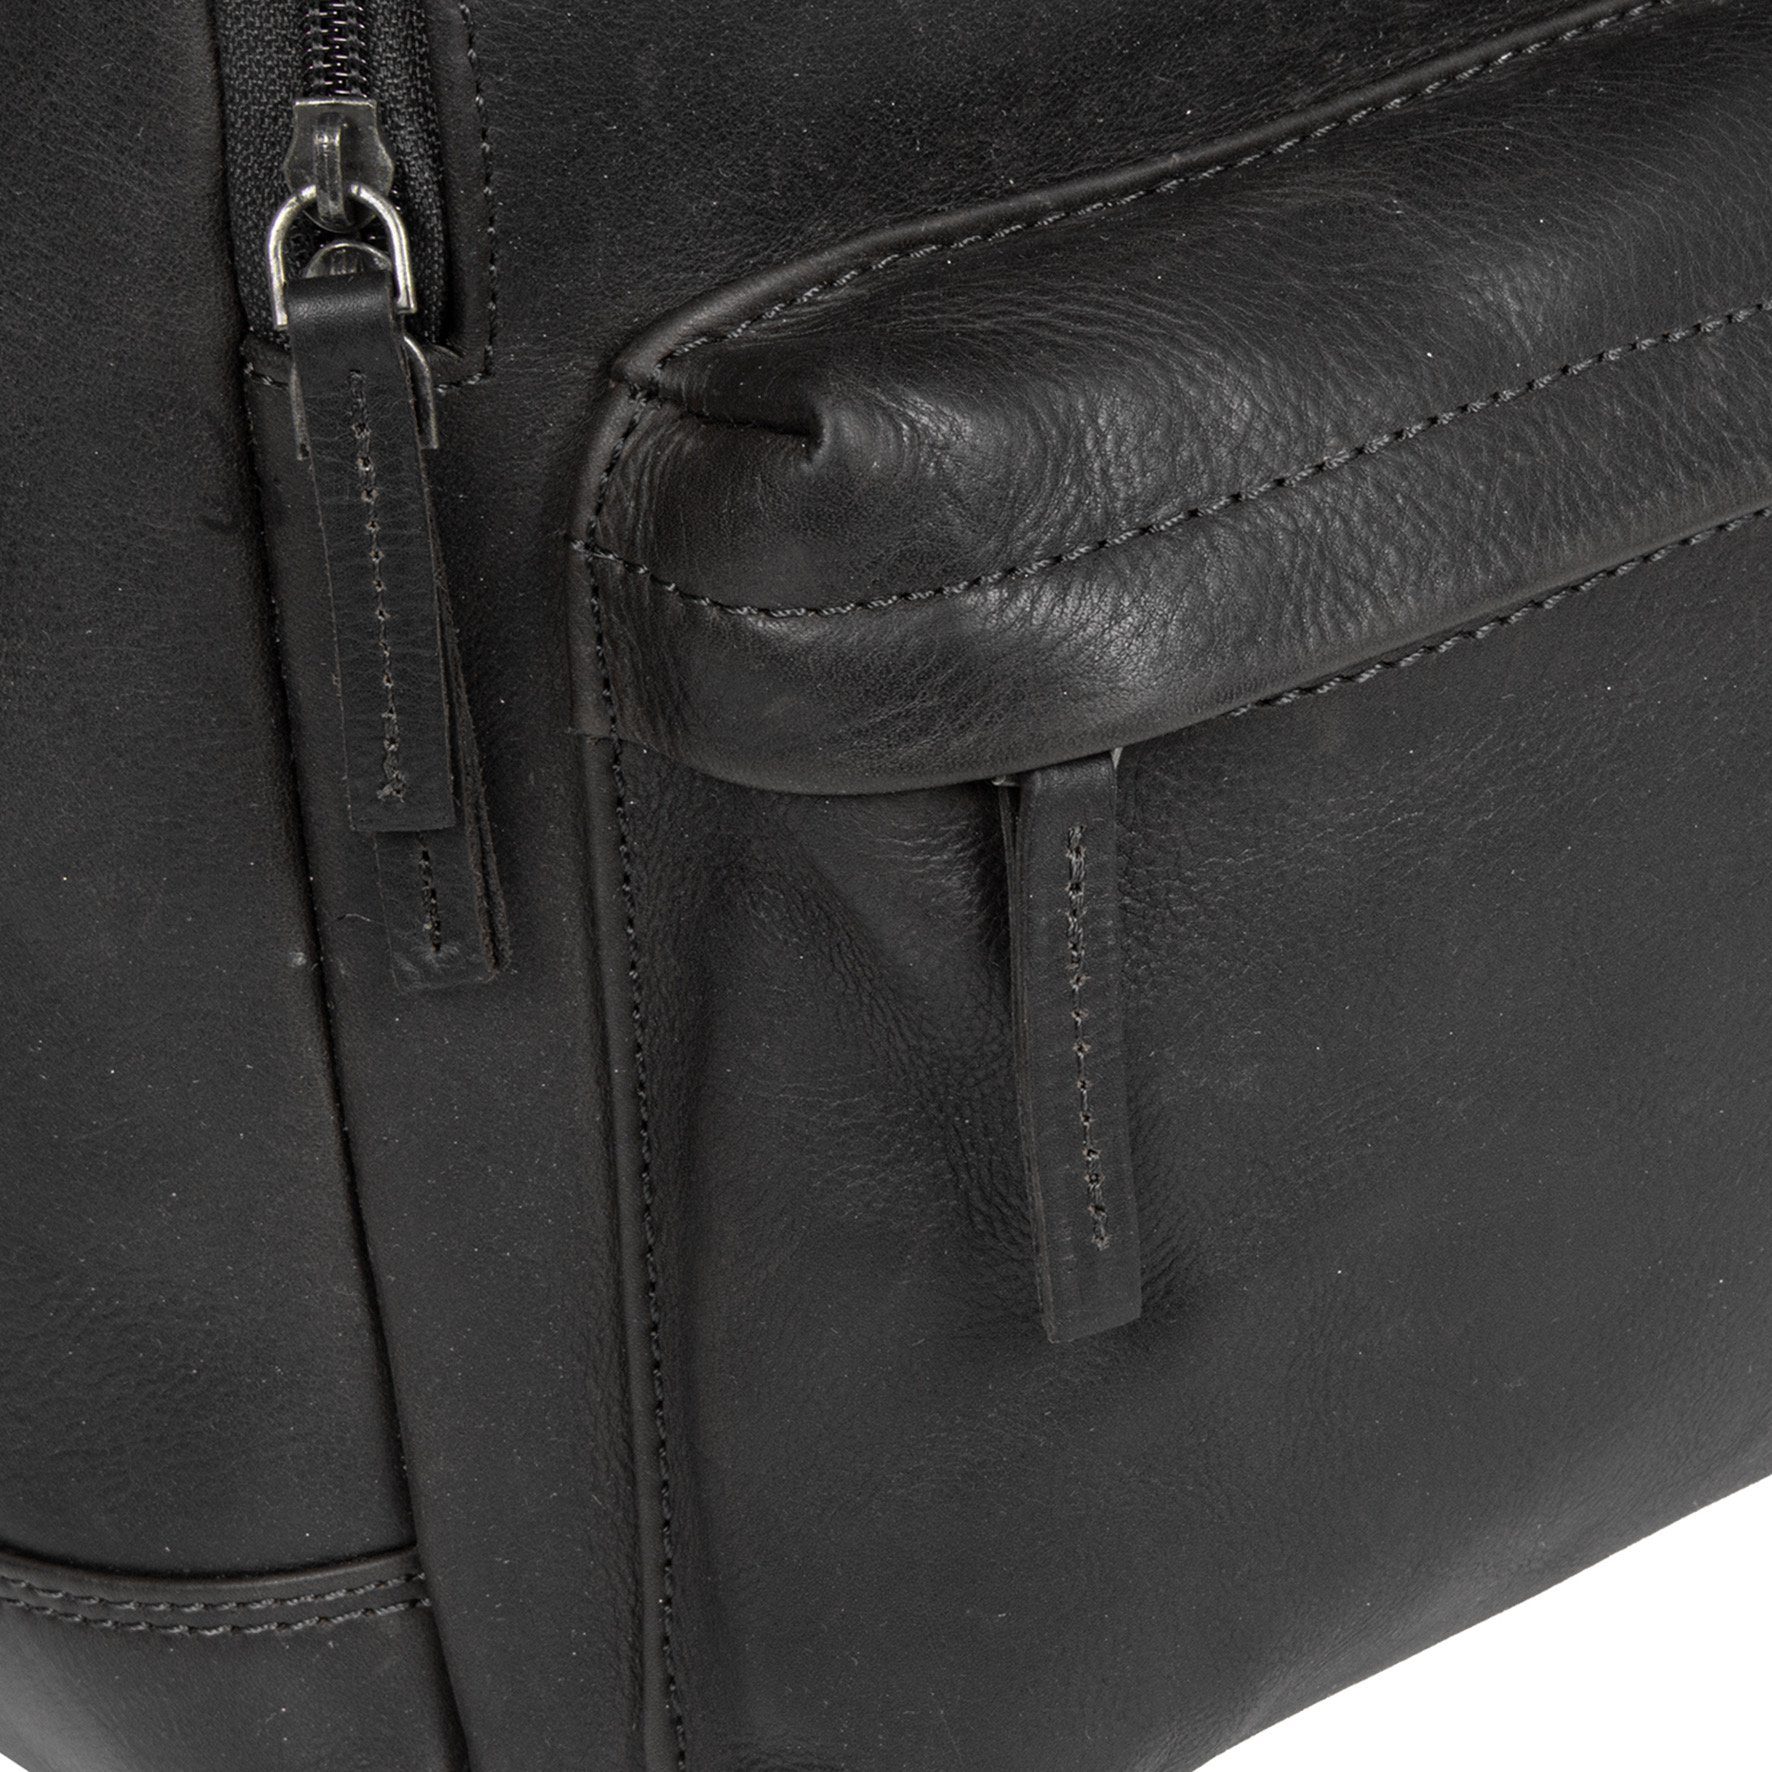 MUSTANG Cityrucksack mit Catania Reißverschluss-Vortasche Backpack, schwarz